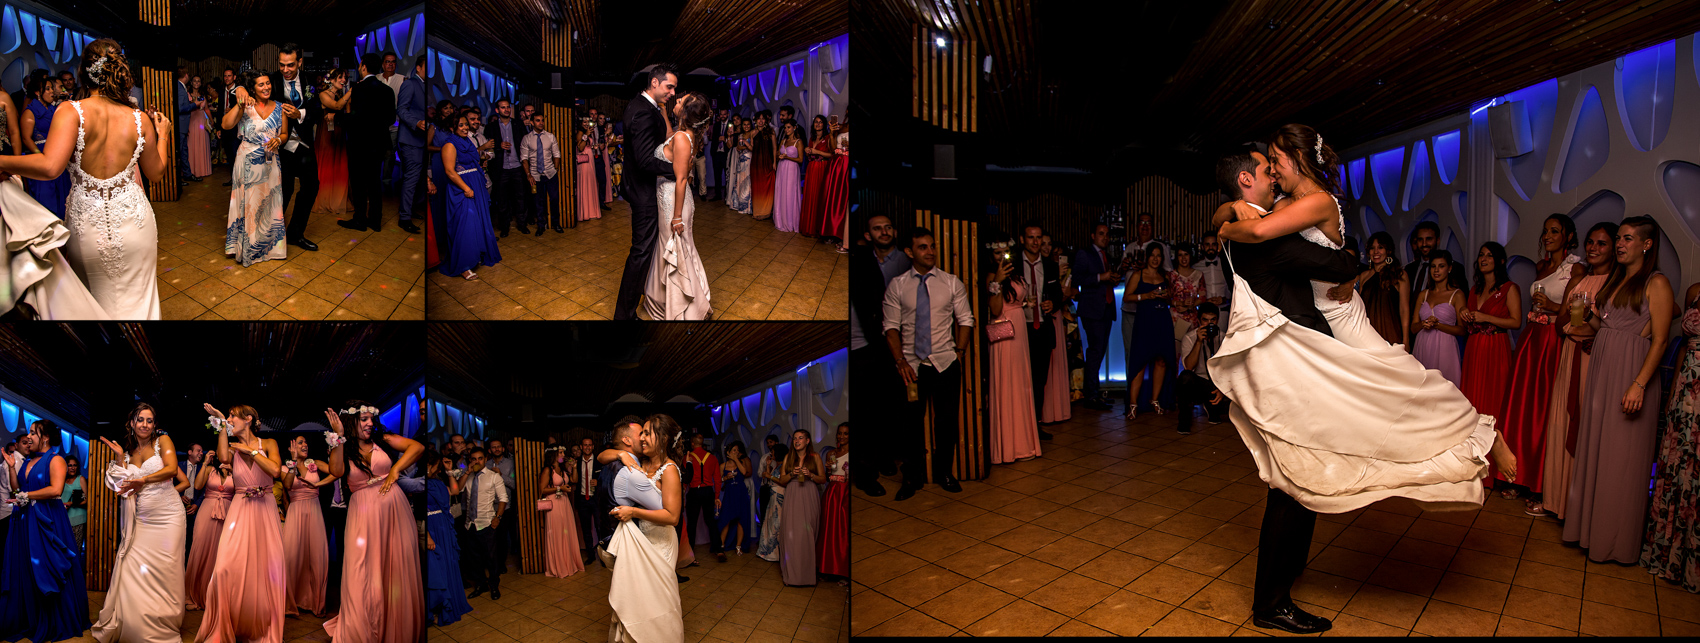 Fotografo de boda en Rota, Cádiz, album del reportaje